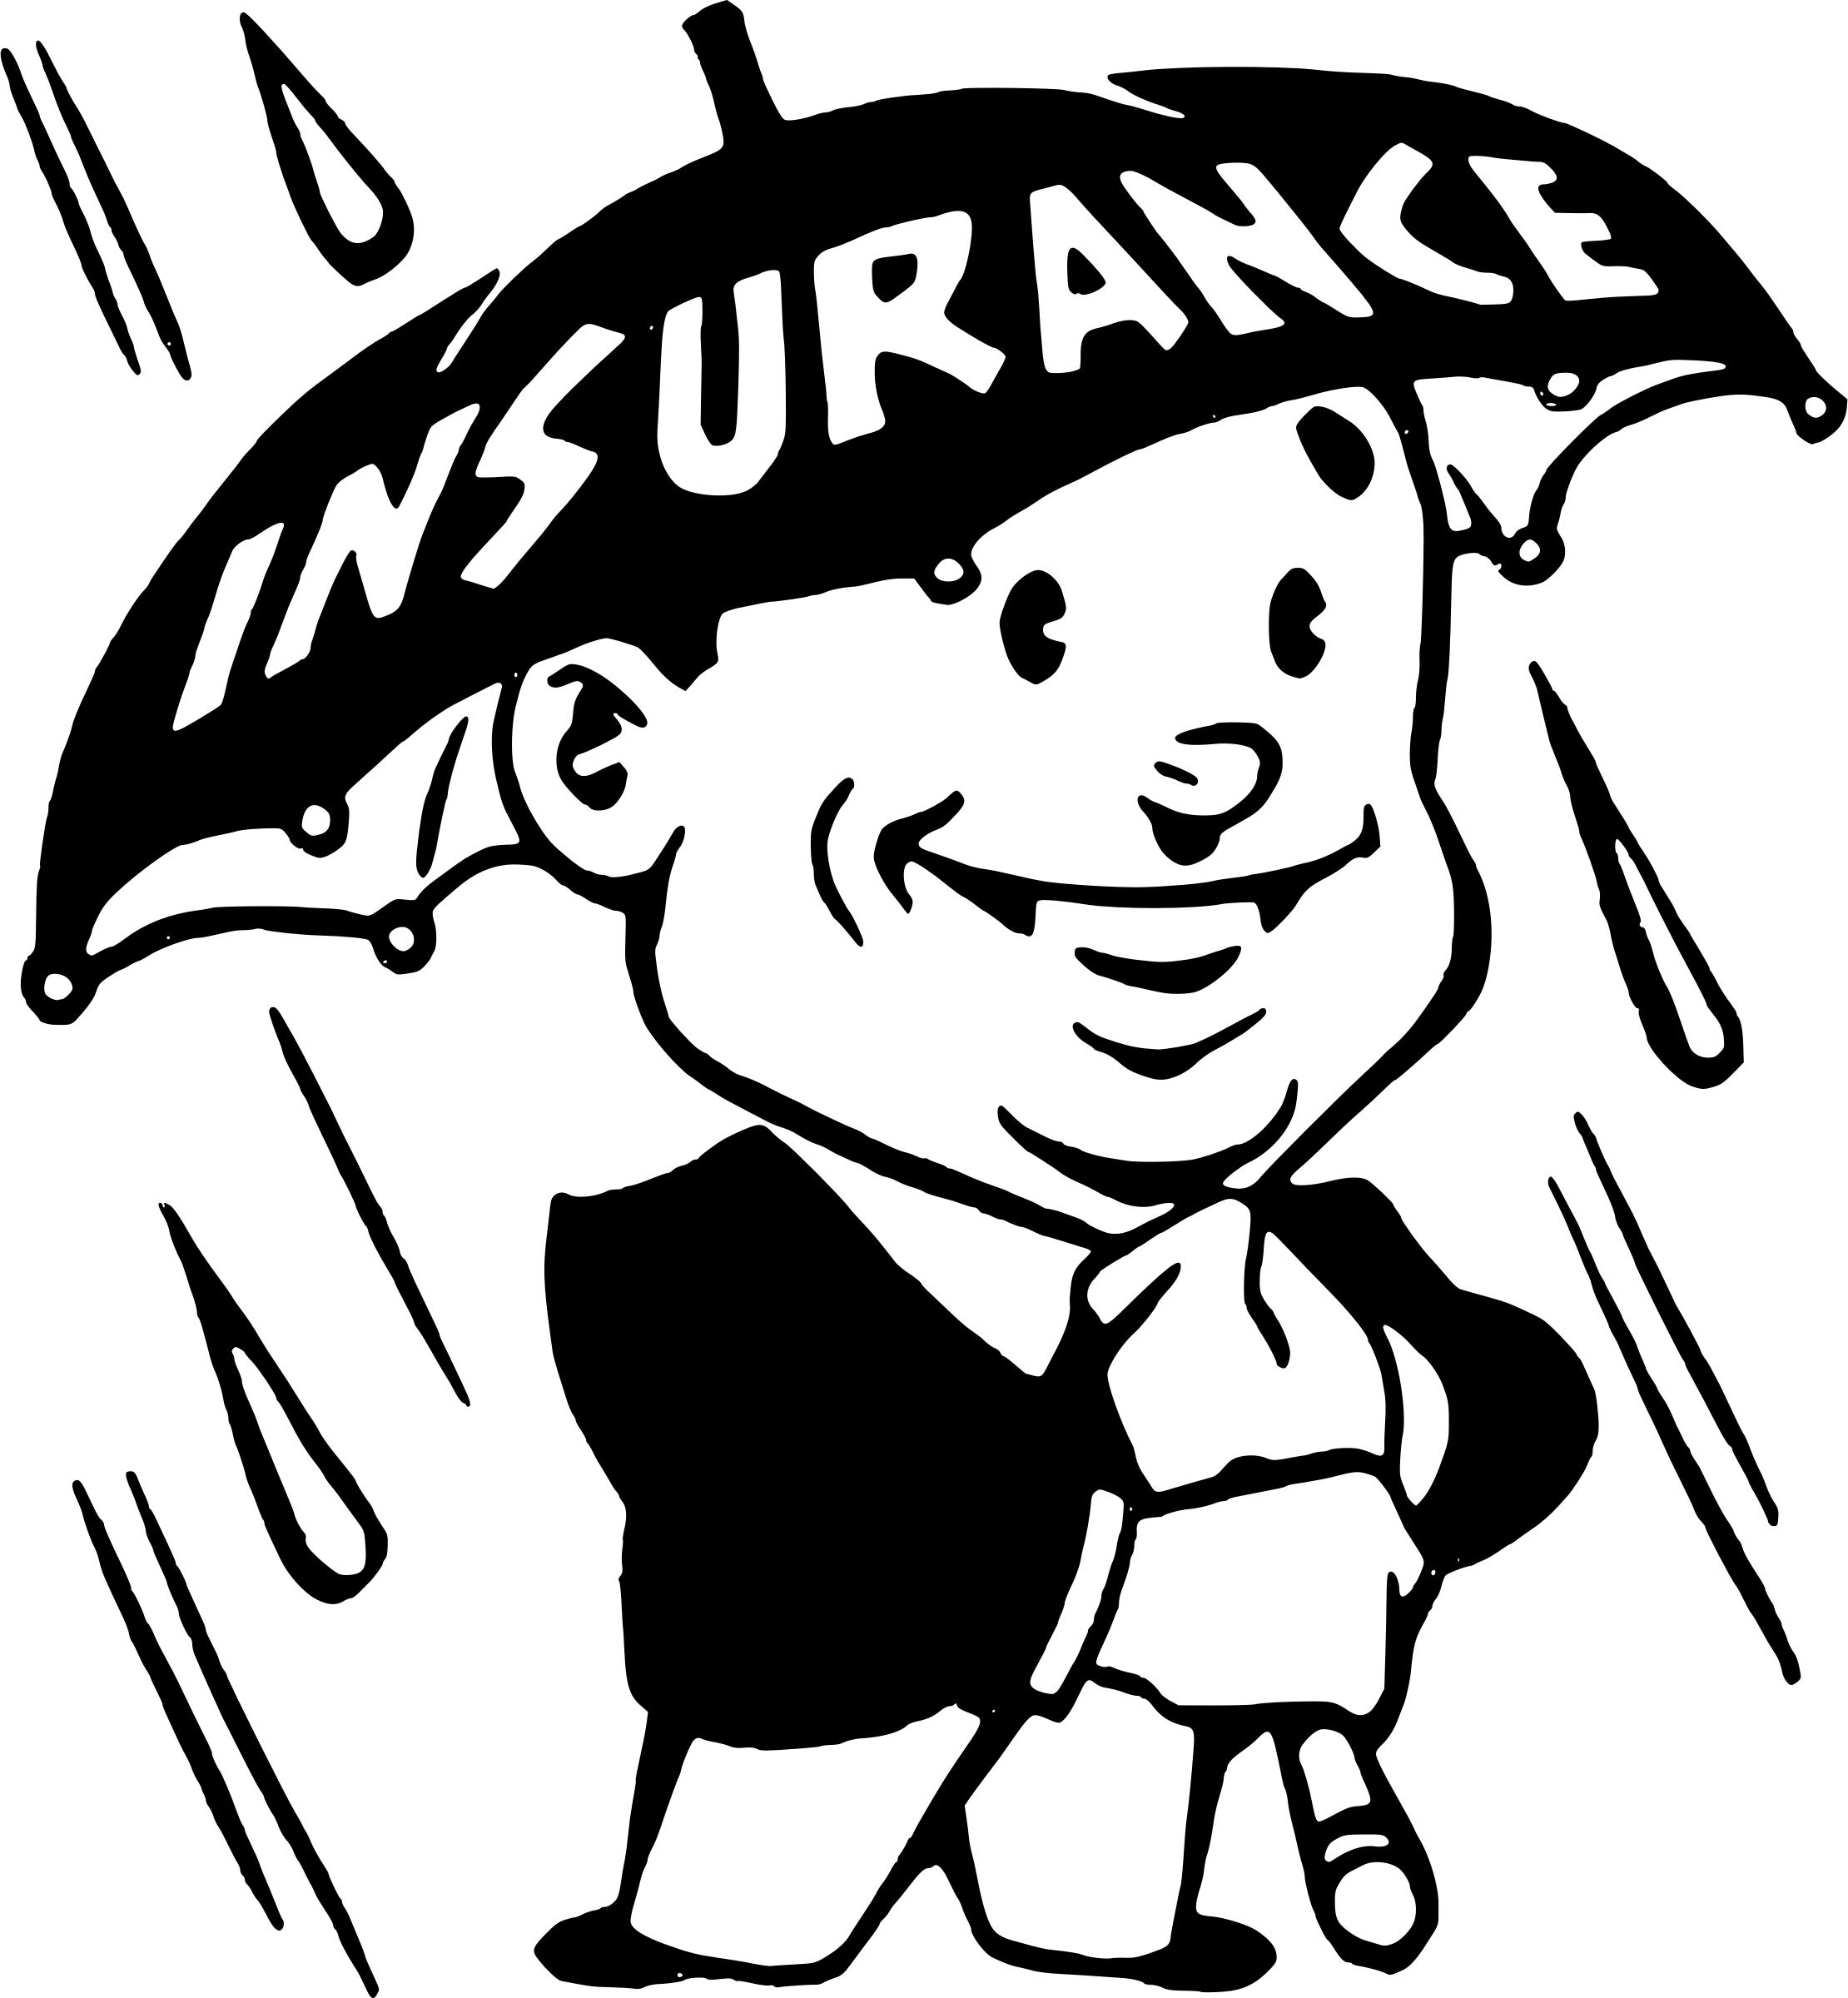 Insurance umbrella png